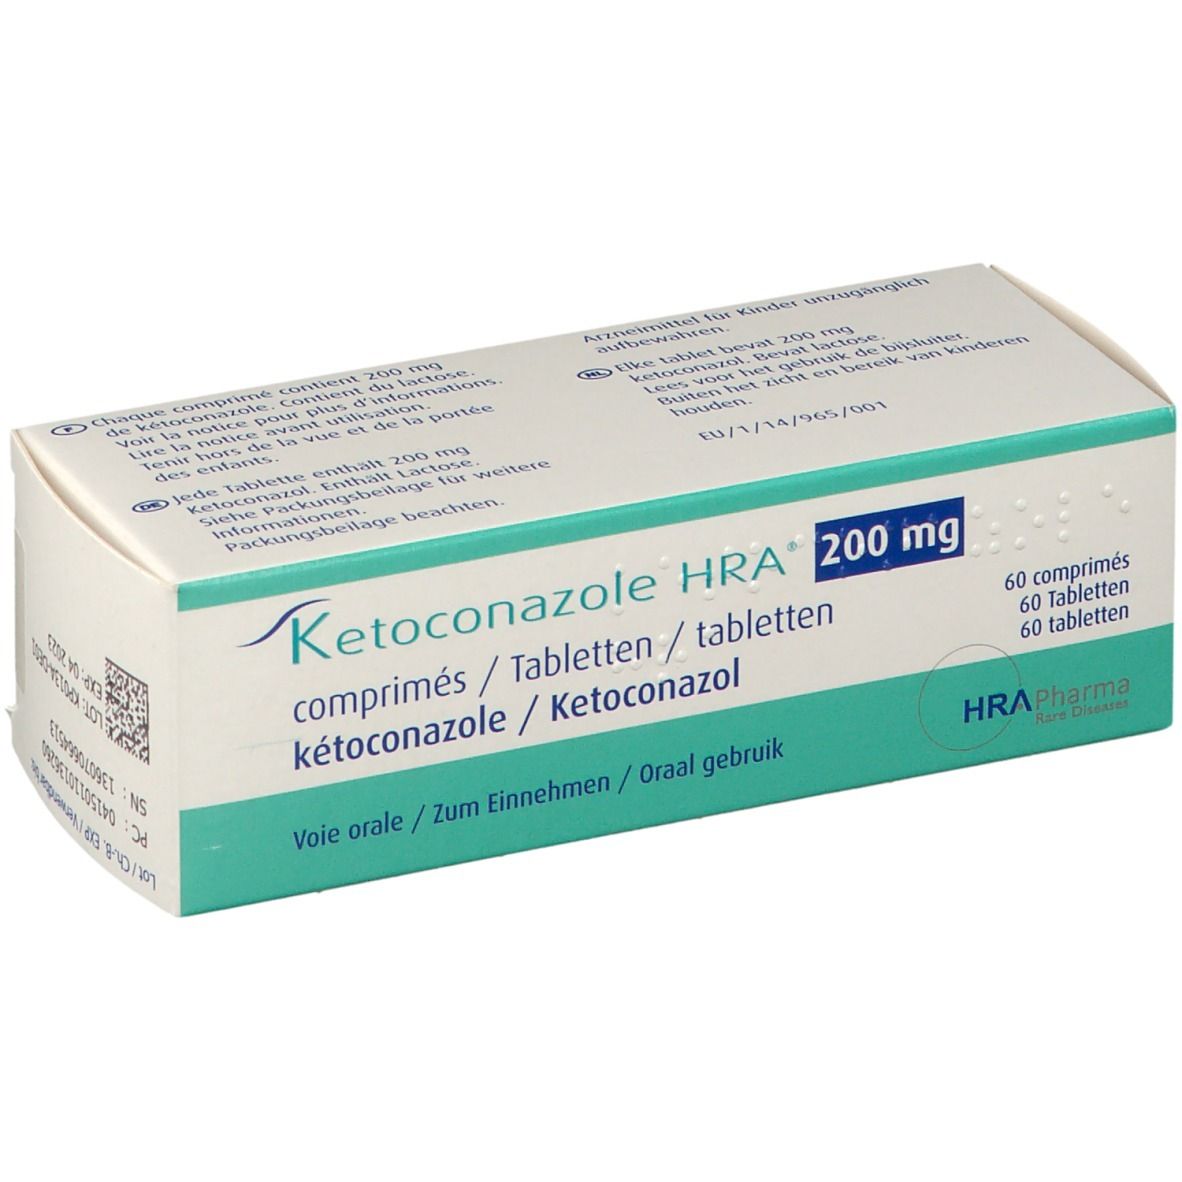 Ketoconazole HRA 200 mg